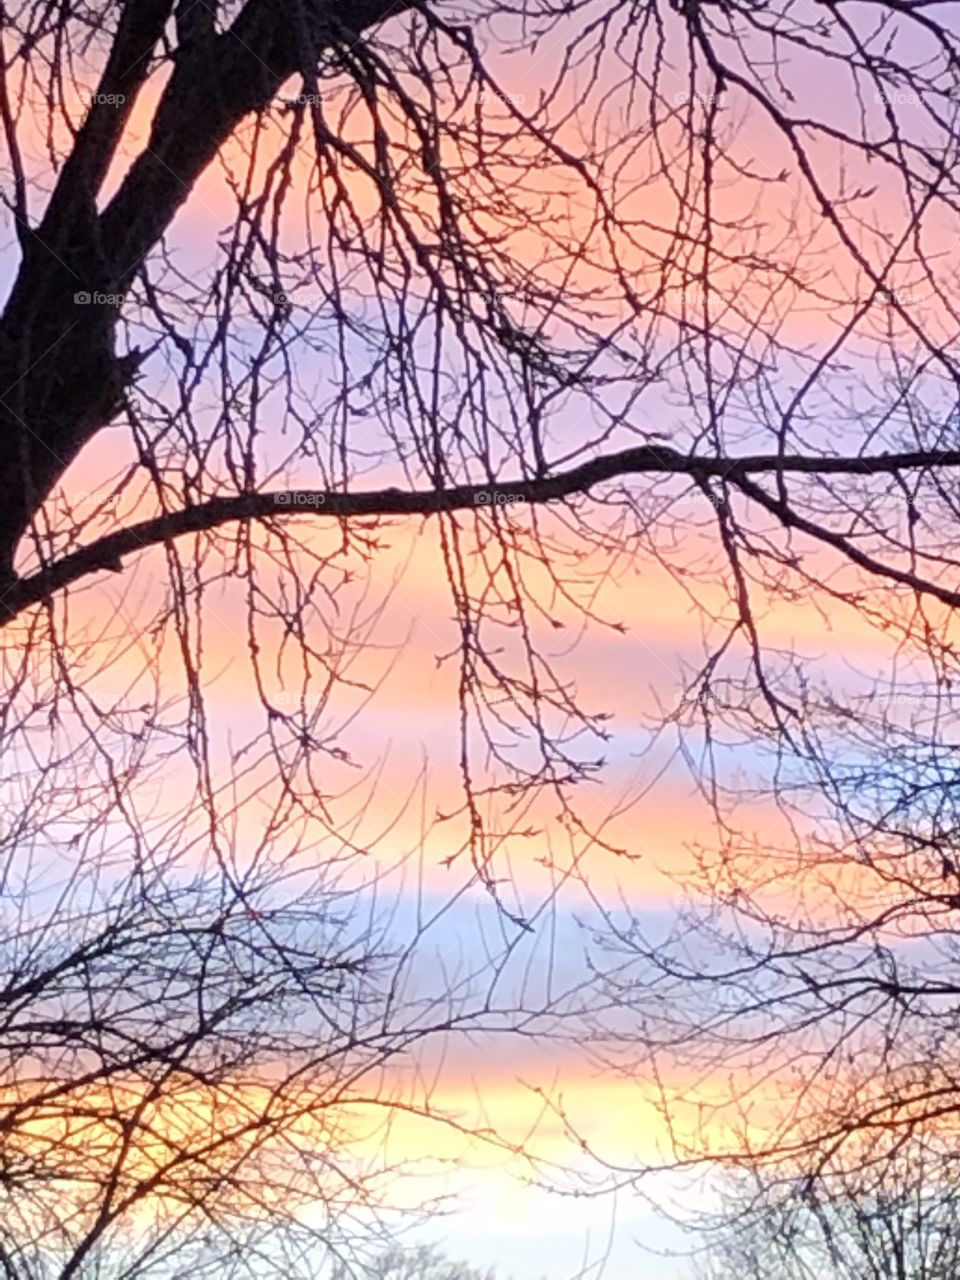 A winter days sunset